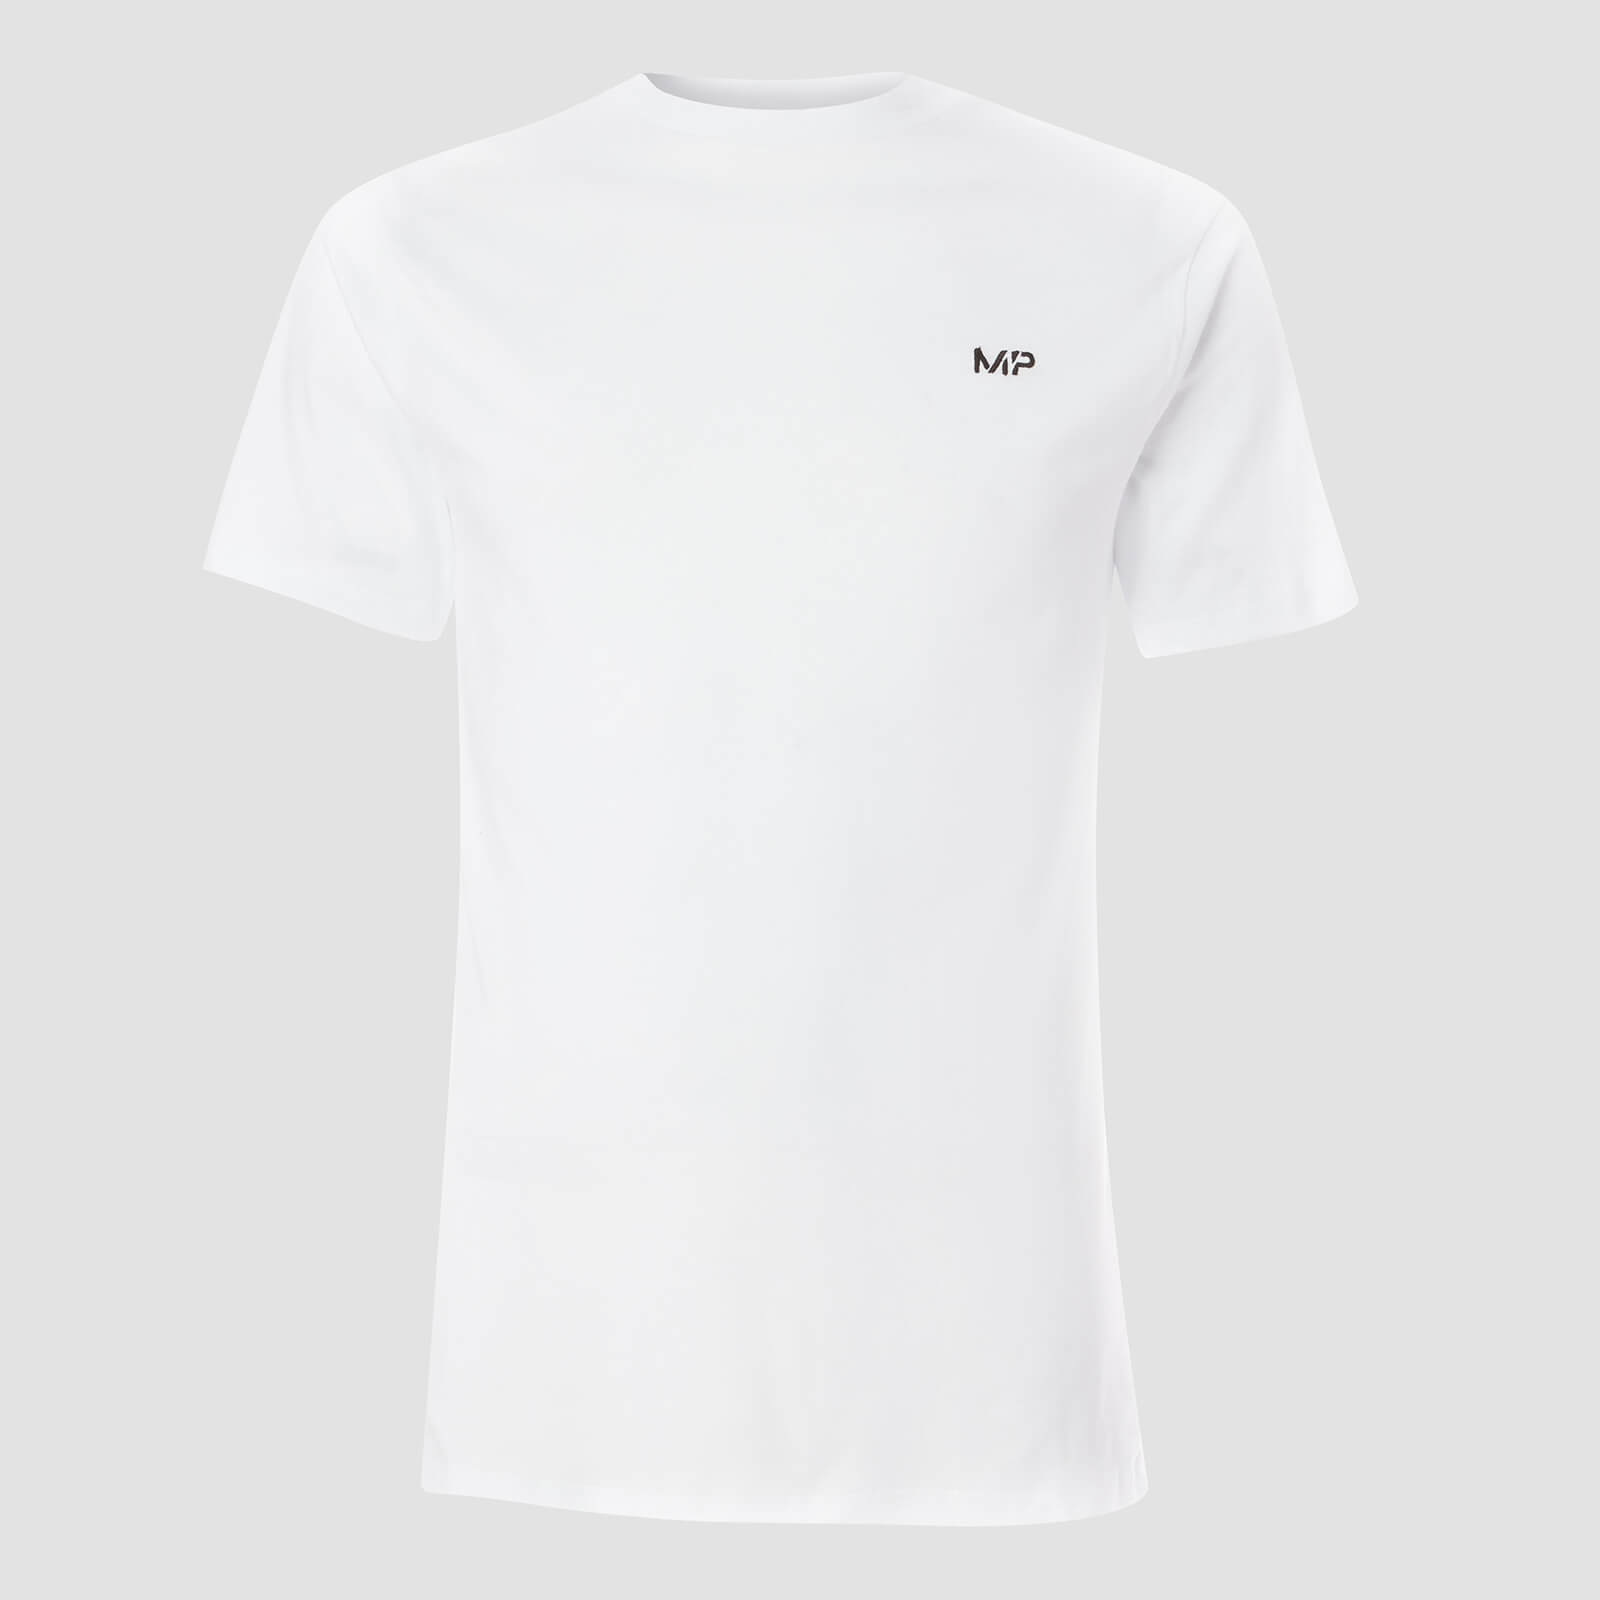 Myprotein T-shirt Essentials MP da uomo (confezione da 2) - Nero/Bianco - M